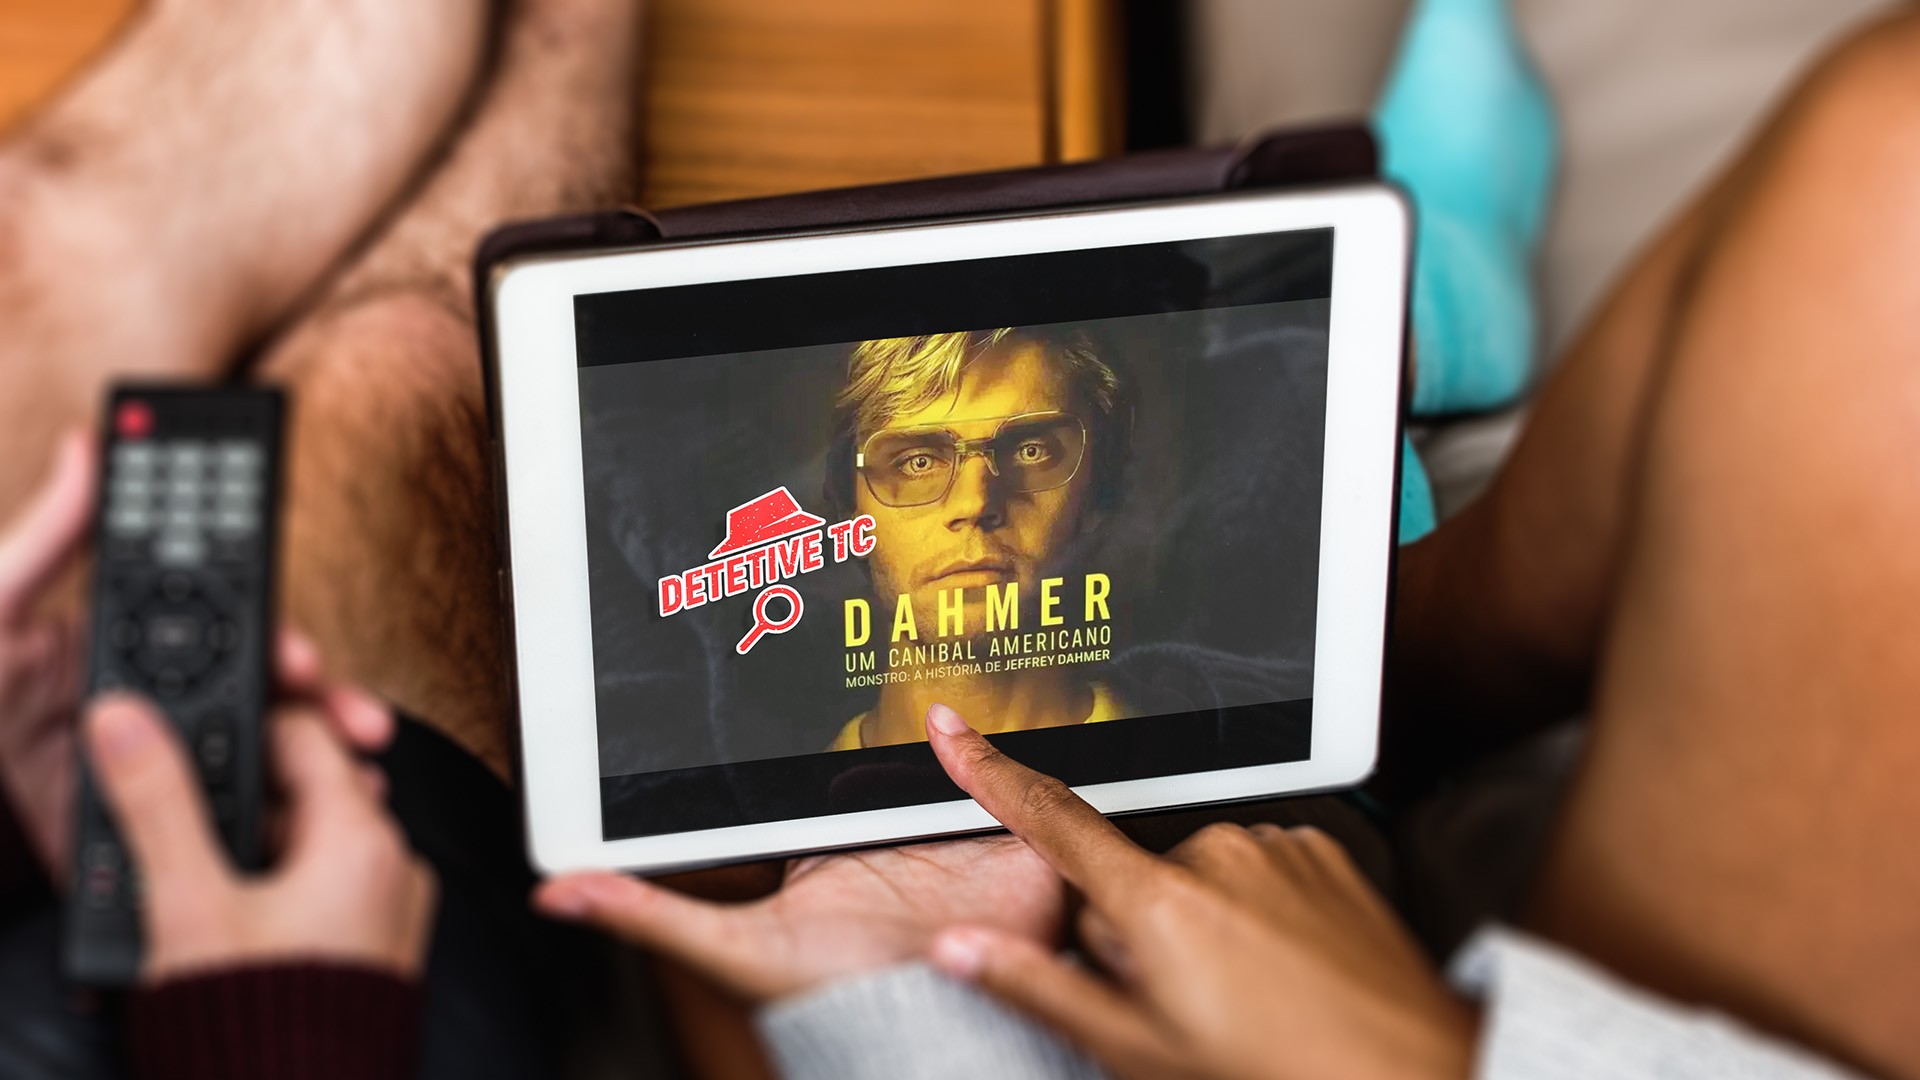 Nova série da Netflix sobre serial killer americano ganha trailer